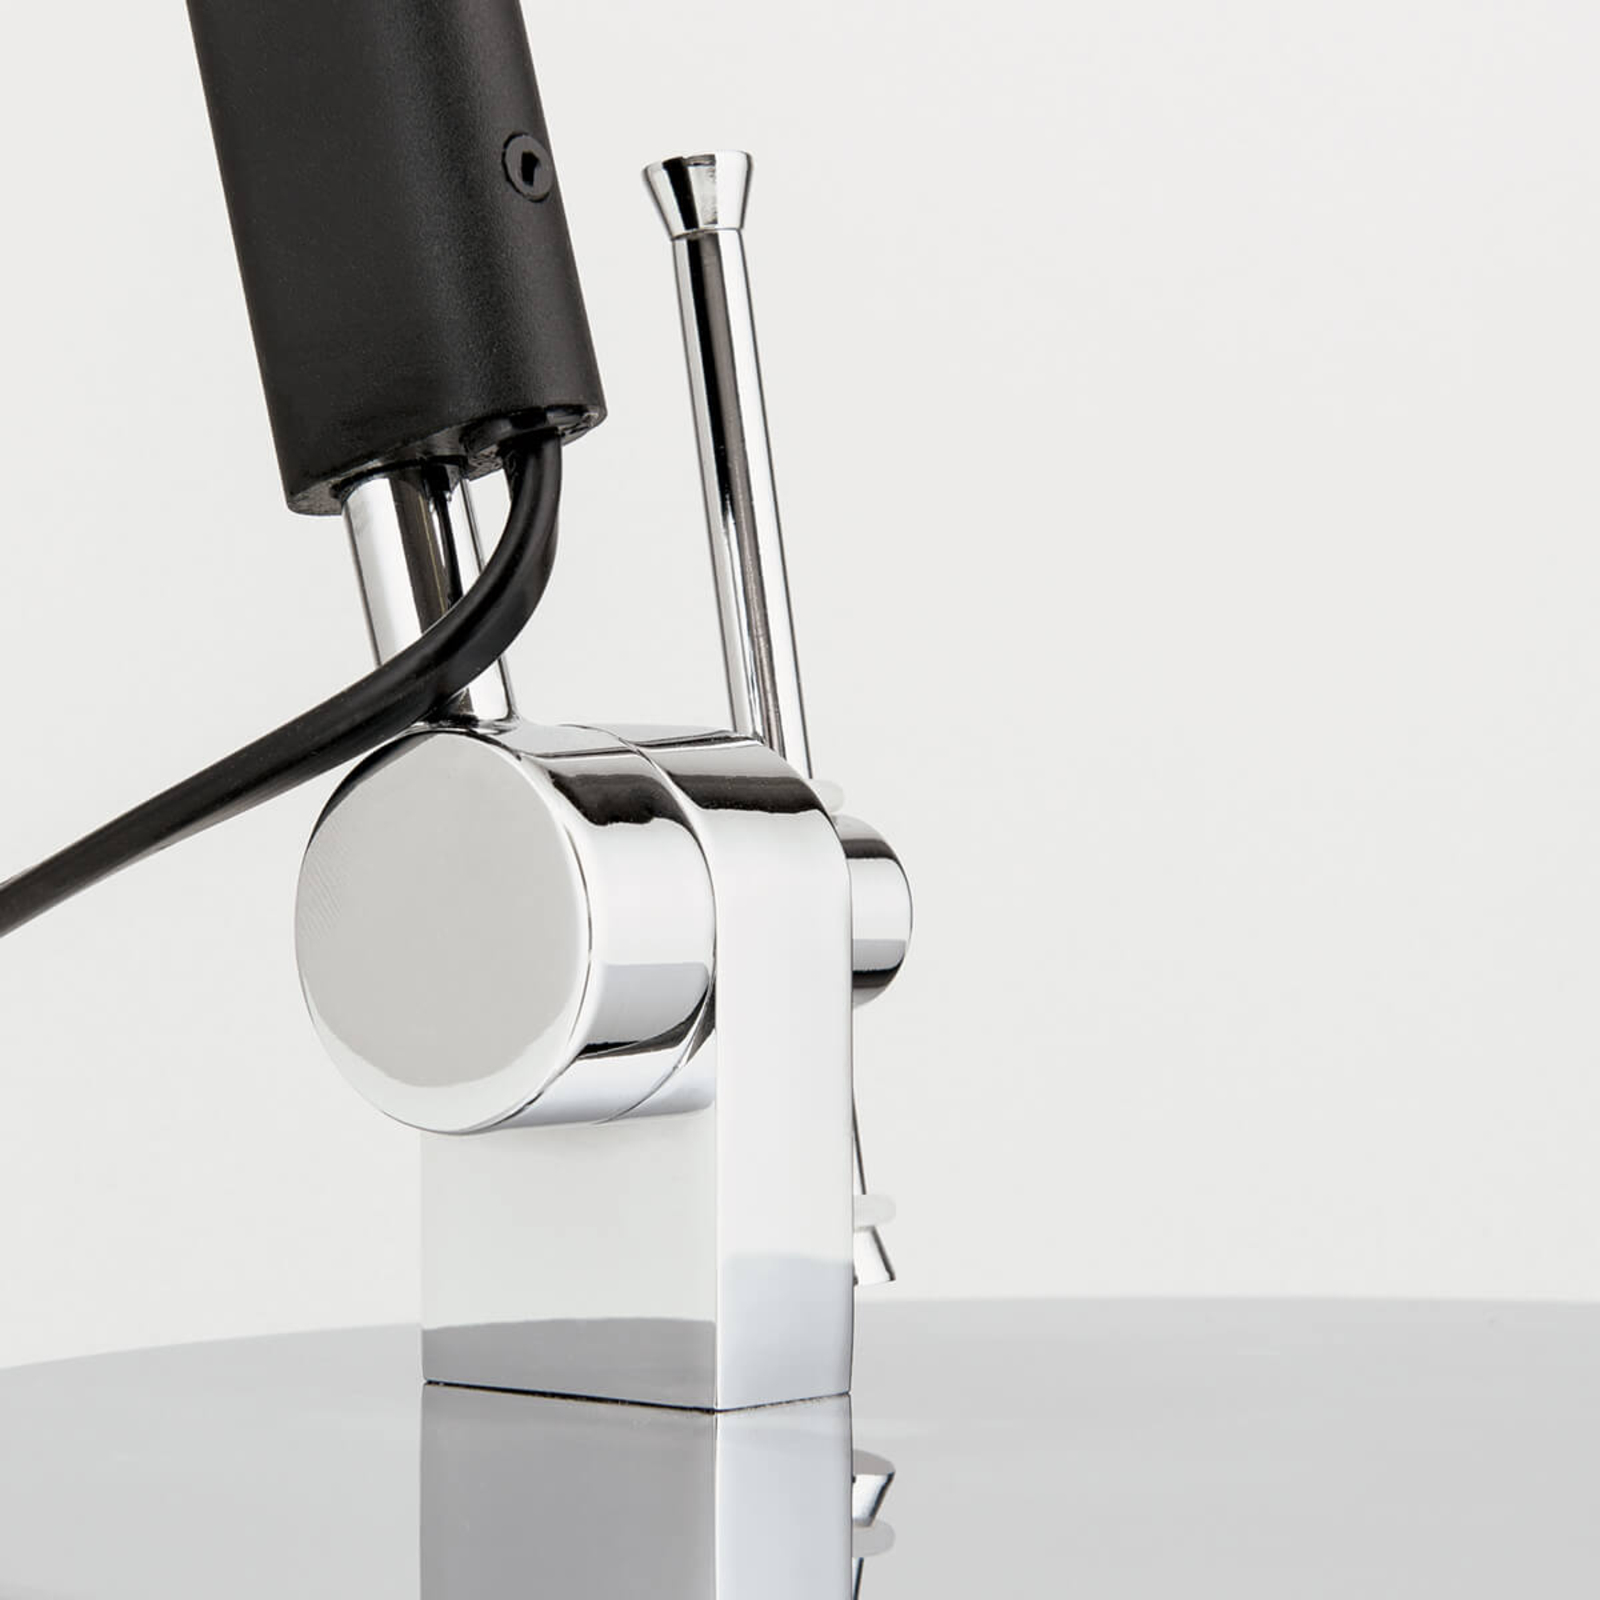 Flexibilní textilní stolní lampa Leandro